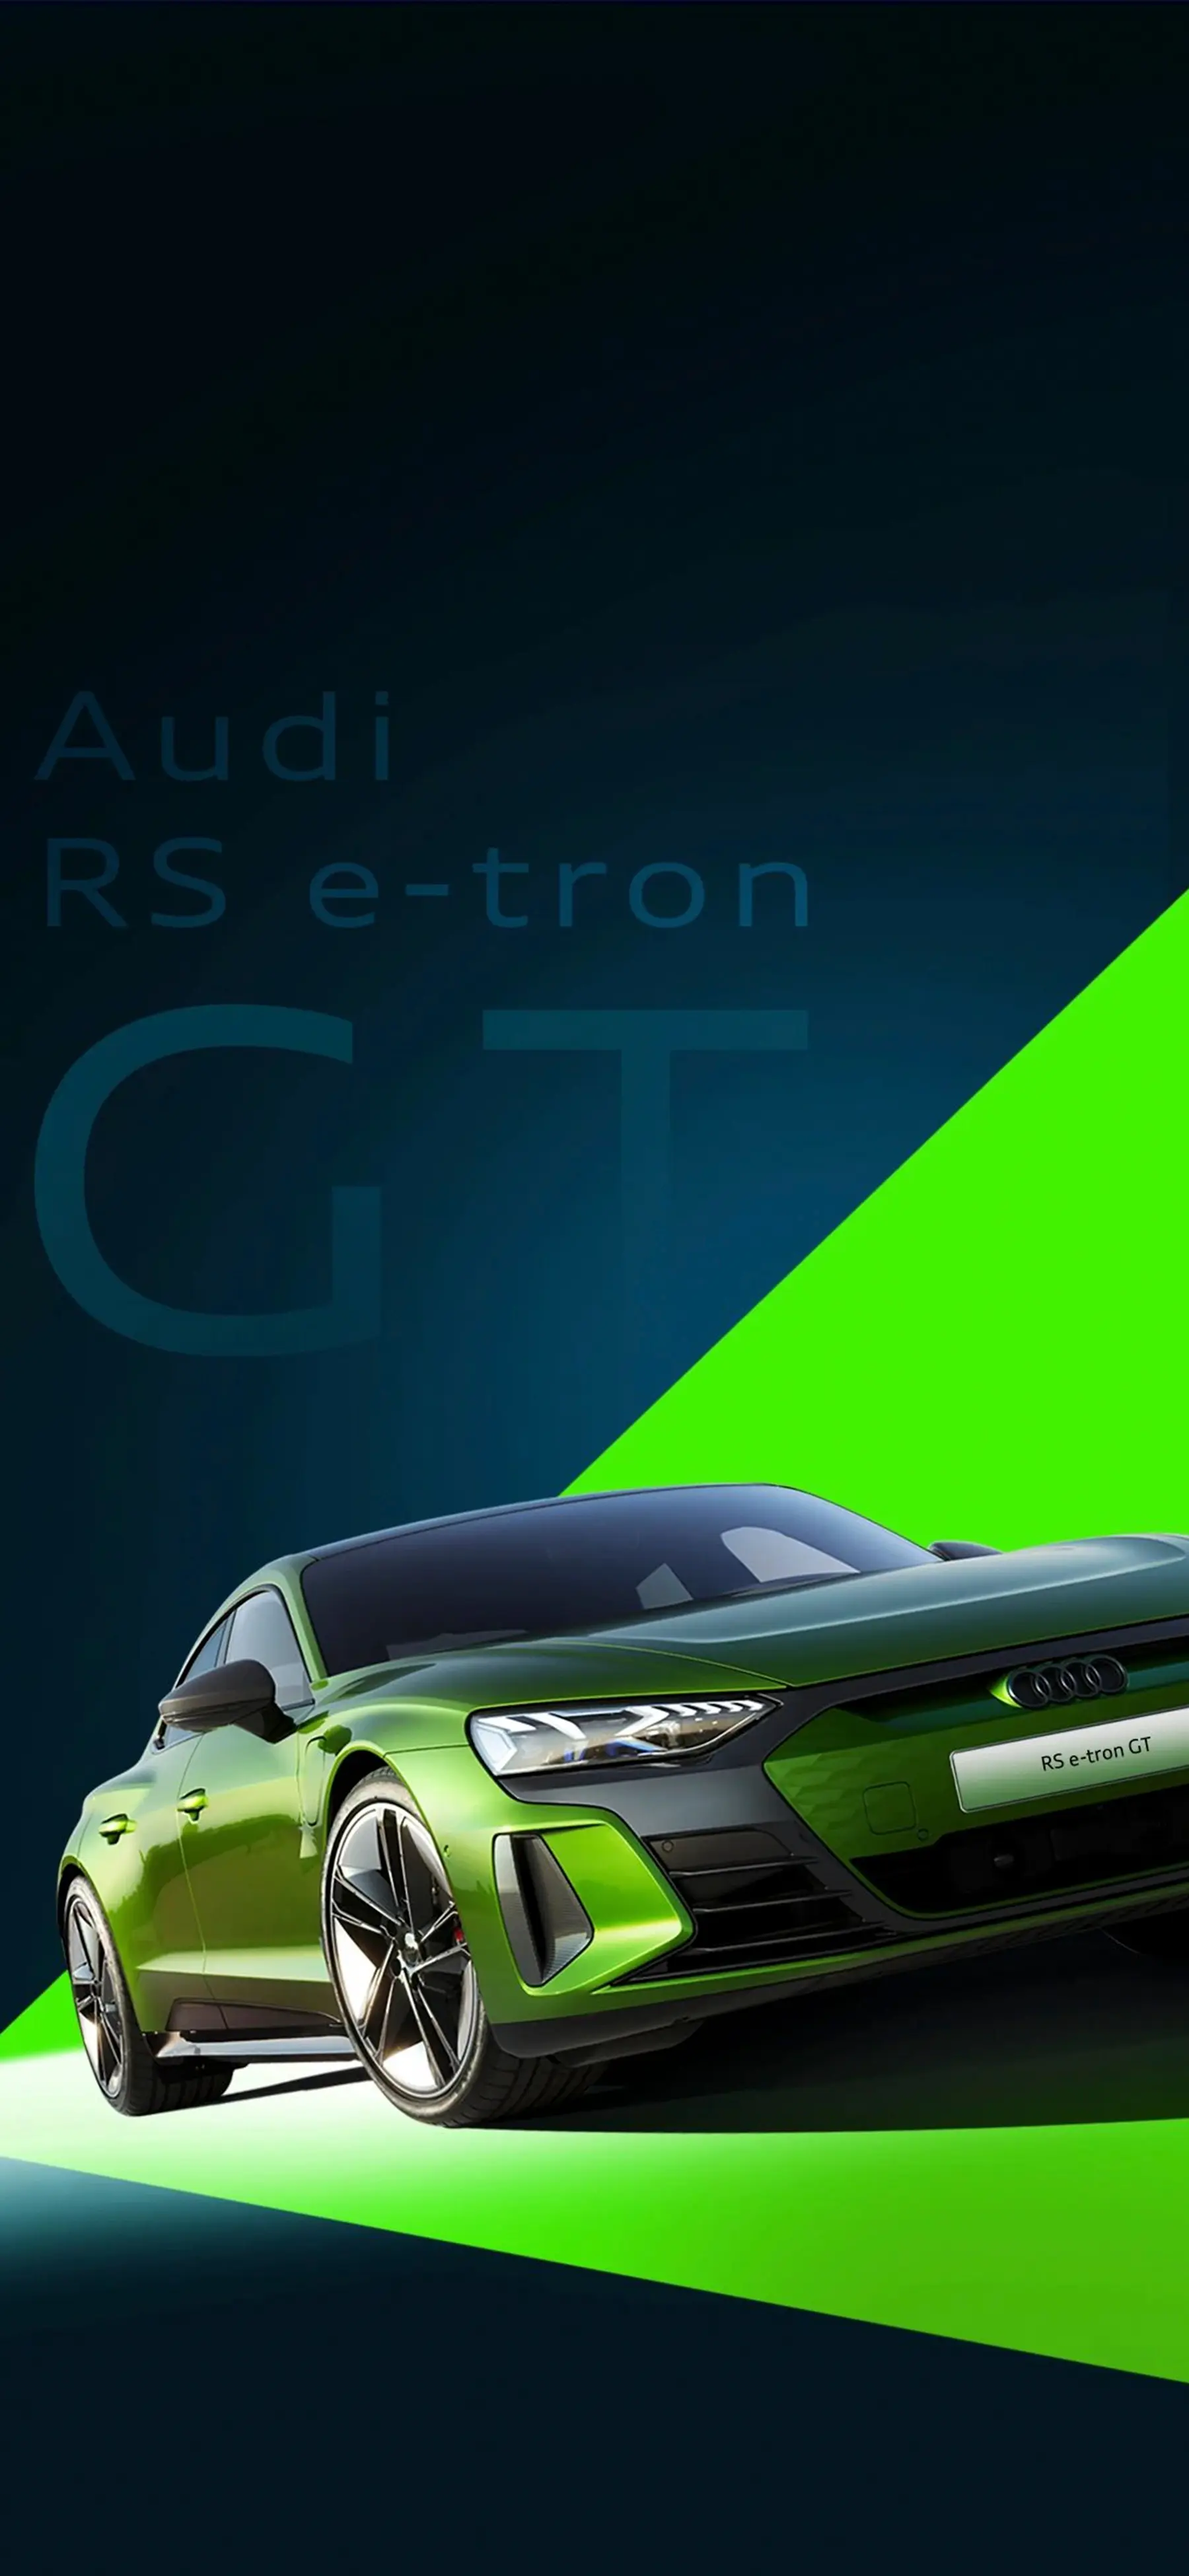 奥迪RS e-tron GT495km